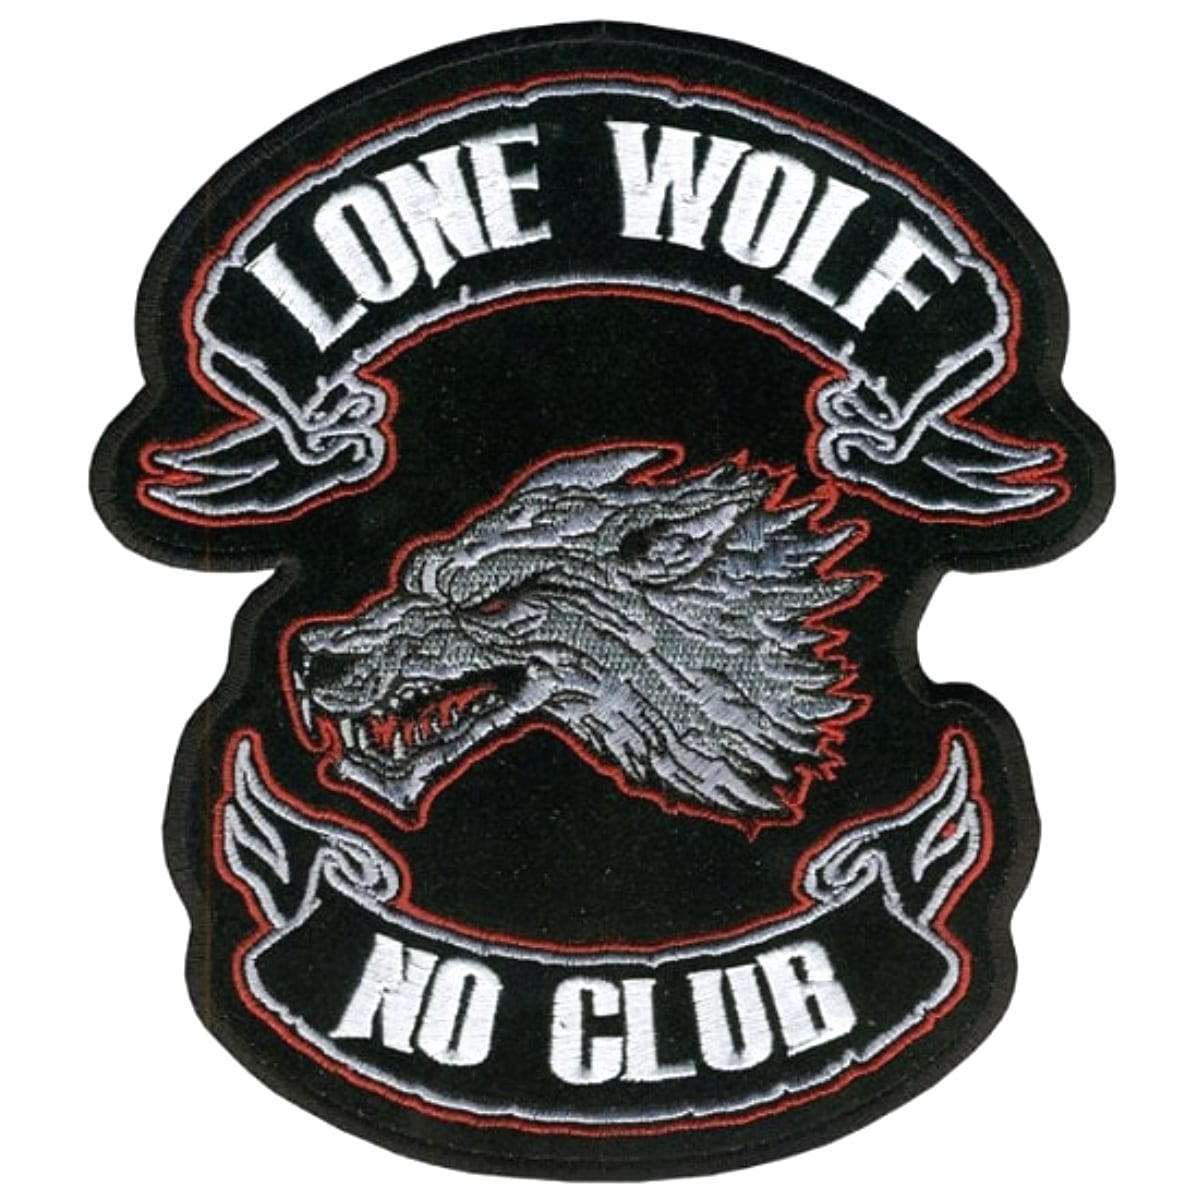 日本未発売! セール価格! ホットレザー 全4サイズ! [Lone Wolf No Club Patch] ローン・ウルフ・ノー・クラブ ワッペン! 狼 パッチ 米国バイカー専門ブランドから直輸入! ウェアのカスタムに! 布製 アイロン対応 サイズ中小